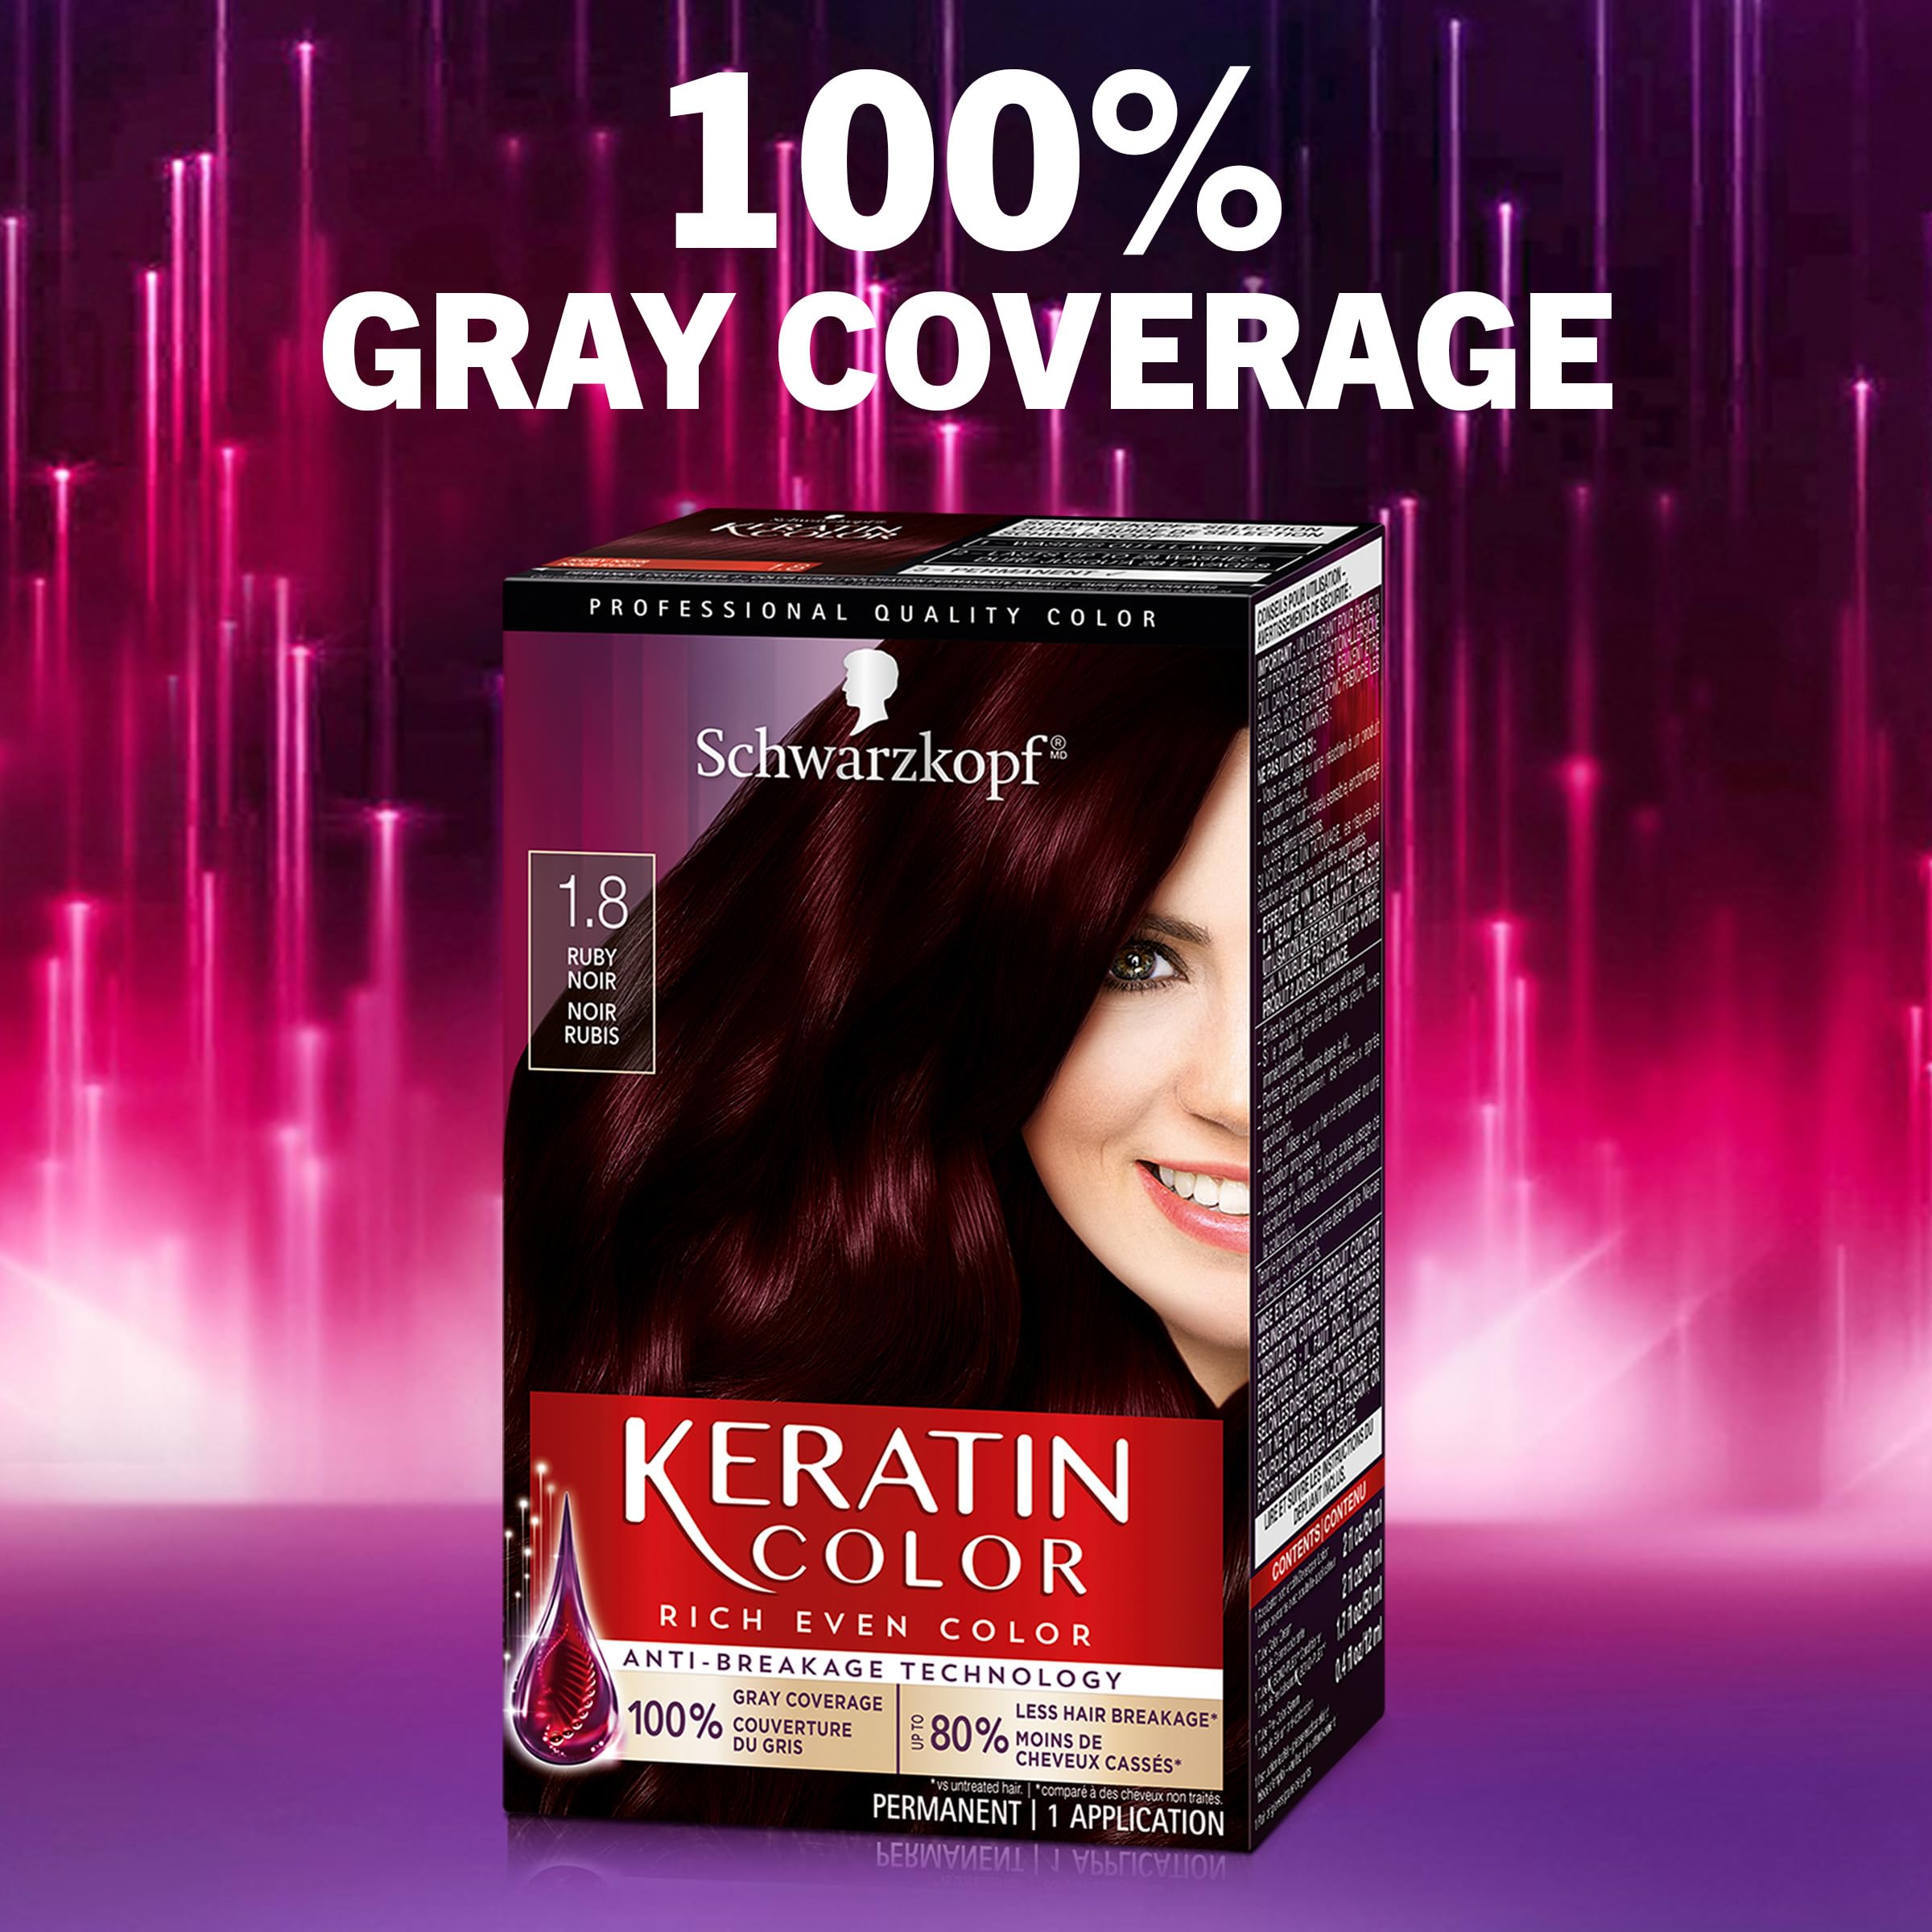 Schwarzkopf Keratin Color Permanent Hair Color Cream, 1.8 Ruby Noir